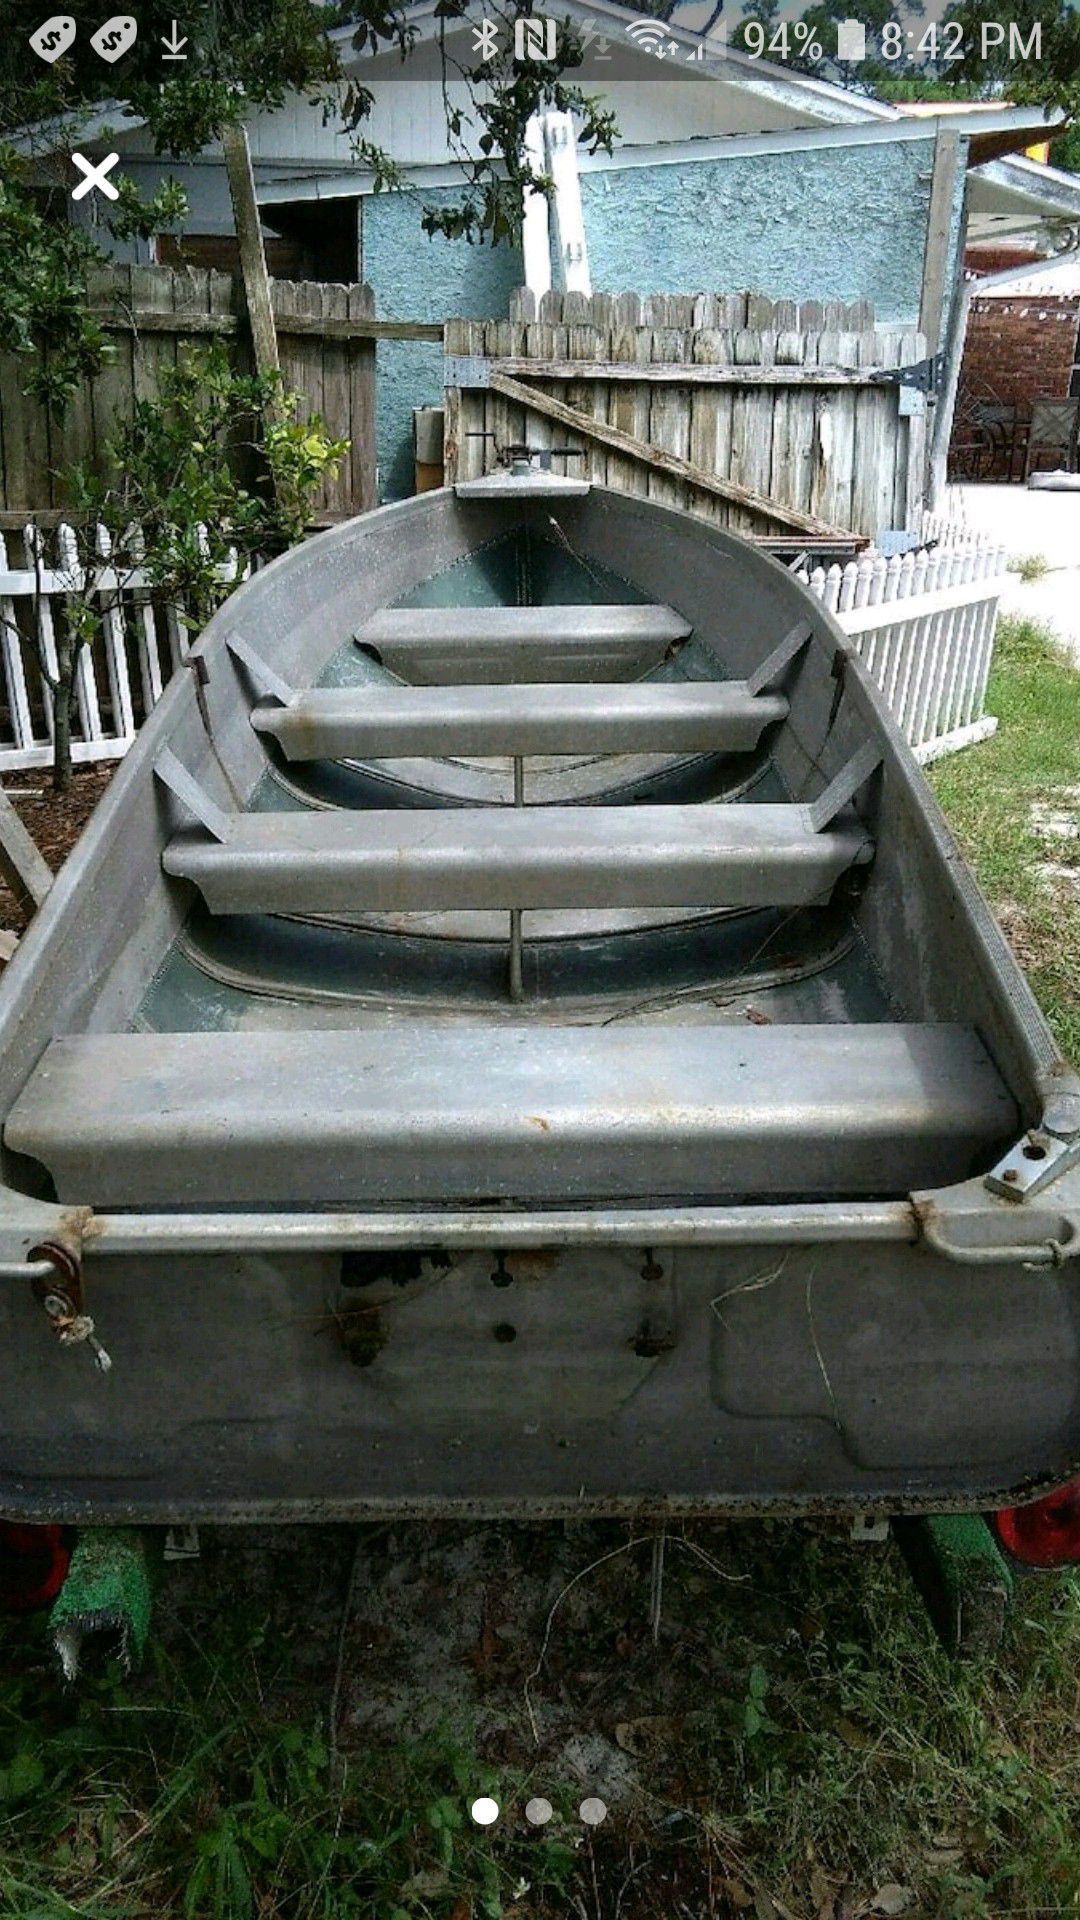 Sears jon boat